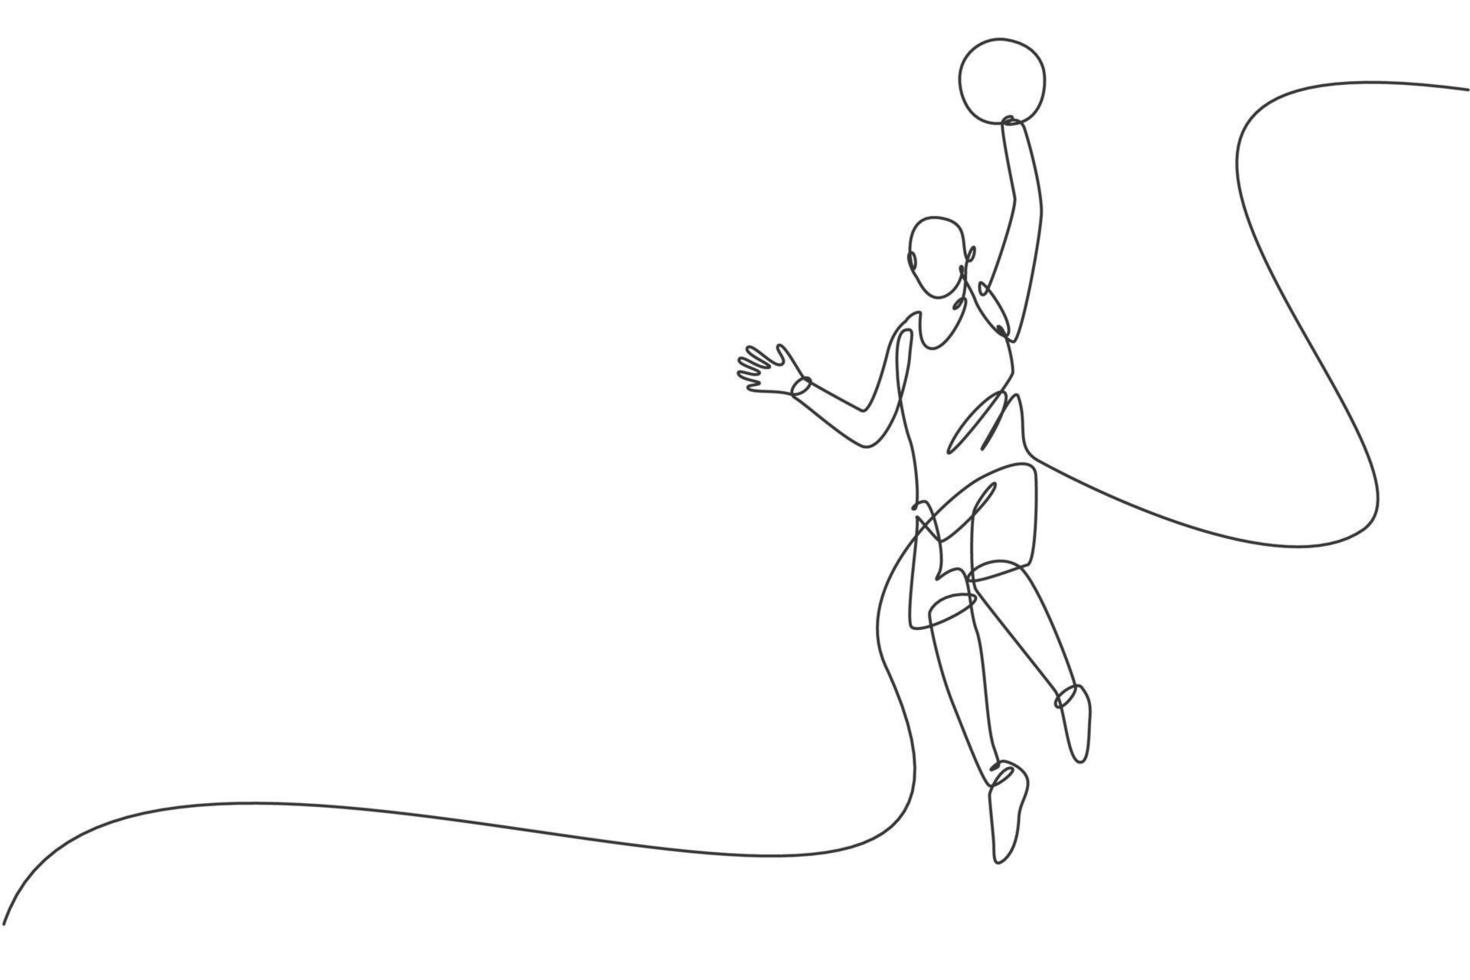 un dessin en ligne continu d'un jeune basketteur sautant pour tirer le ballon. notion de sport d'équipe. illustration vectorielle dynamique de conception de dessin à une seule ligne pour l'affiche de recrutement de l'équipe de basket ball du collège vecteur